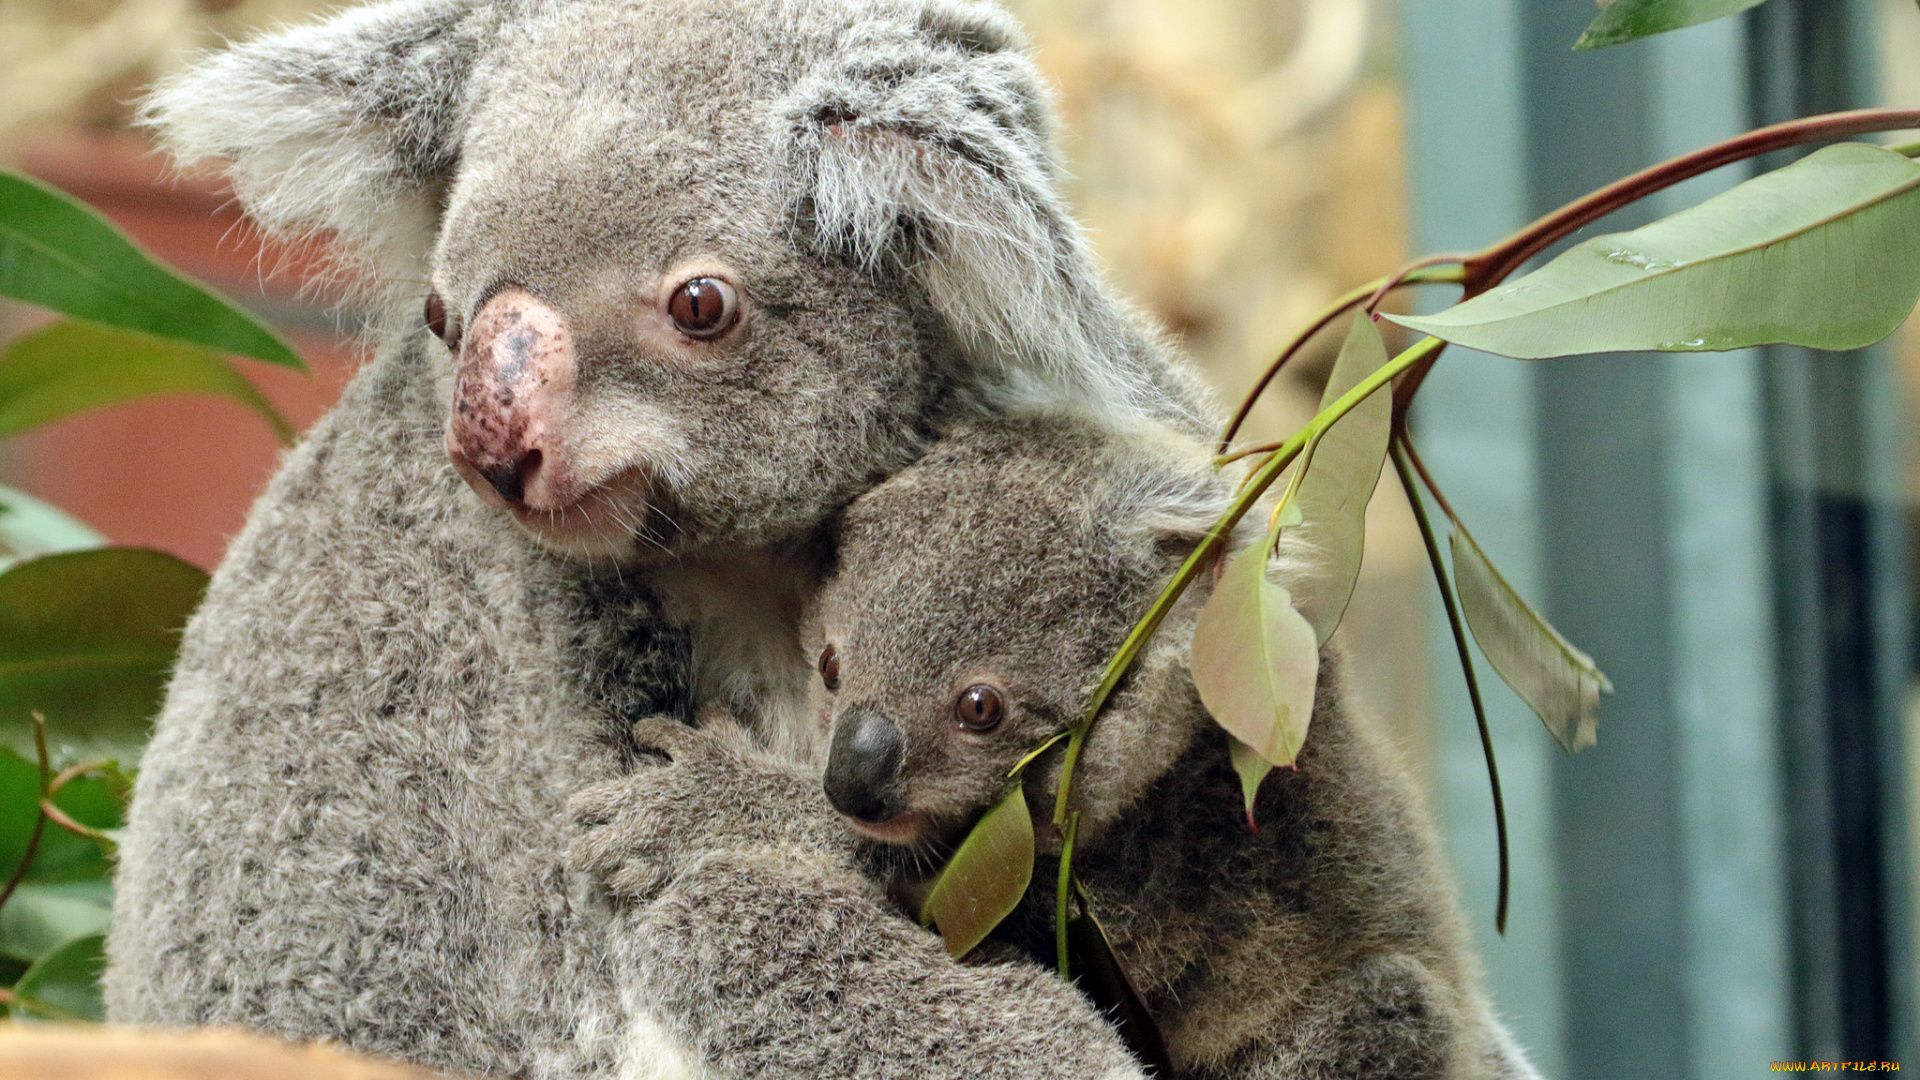 Koala Photo